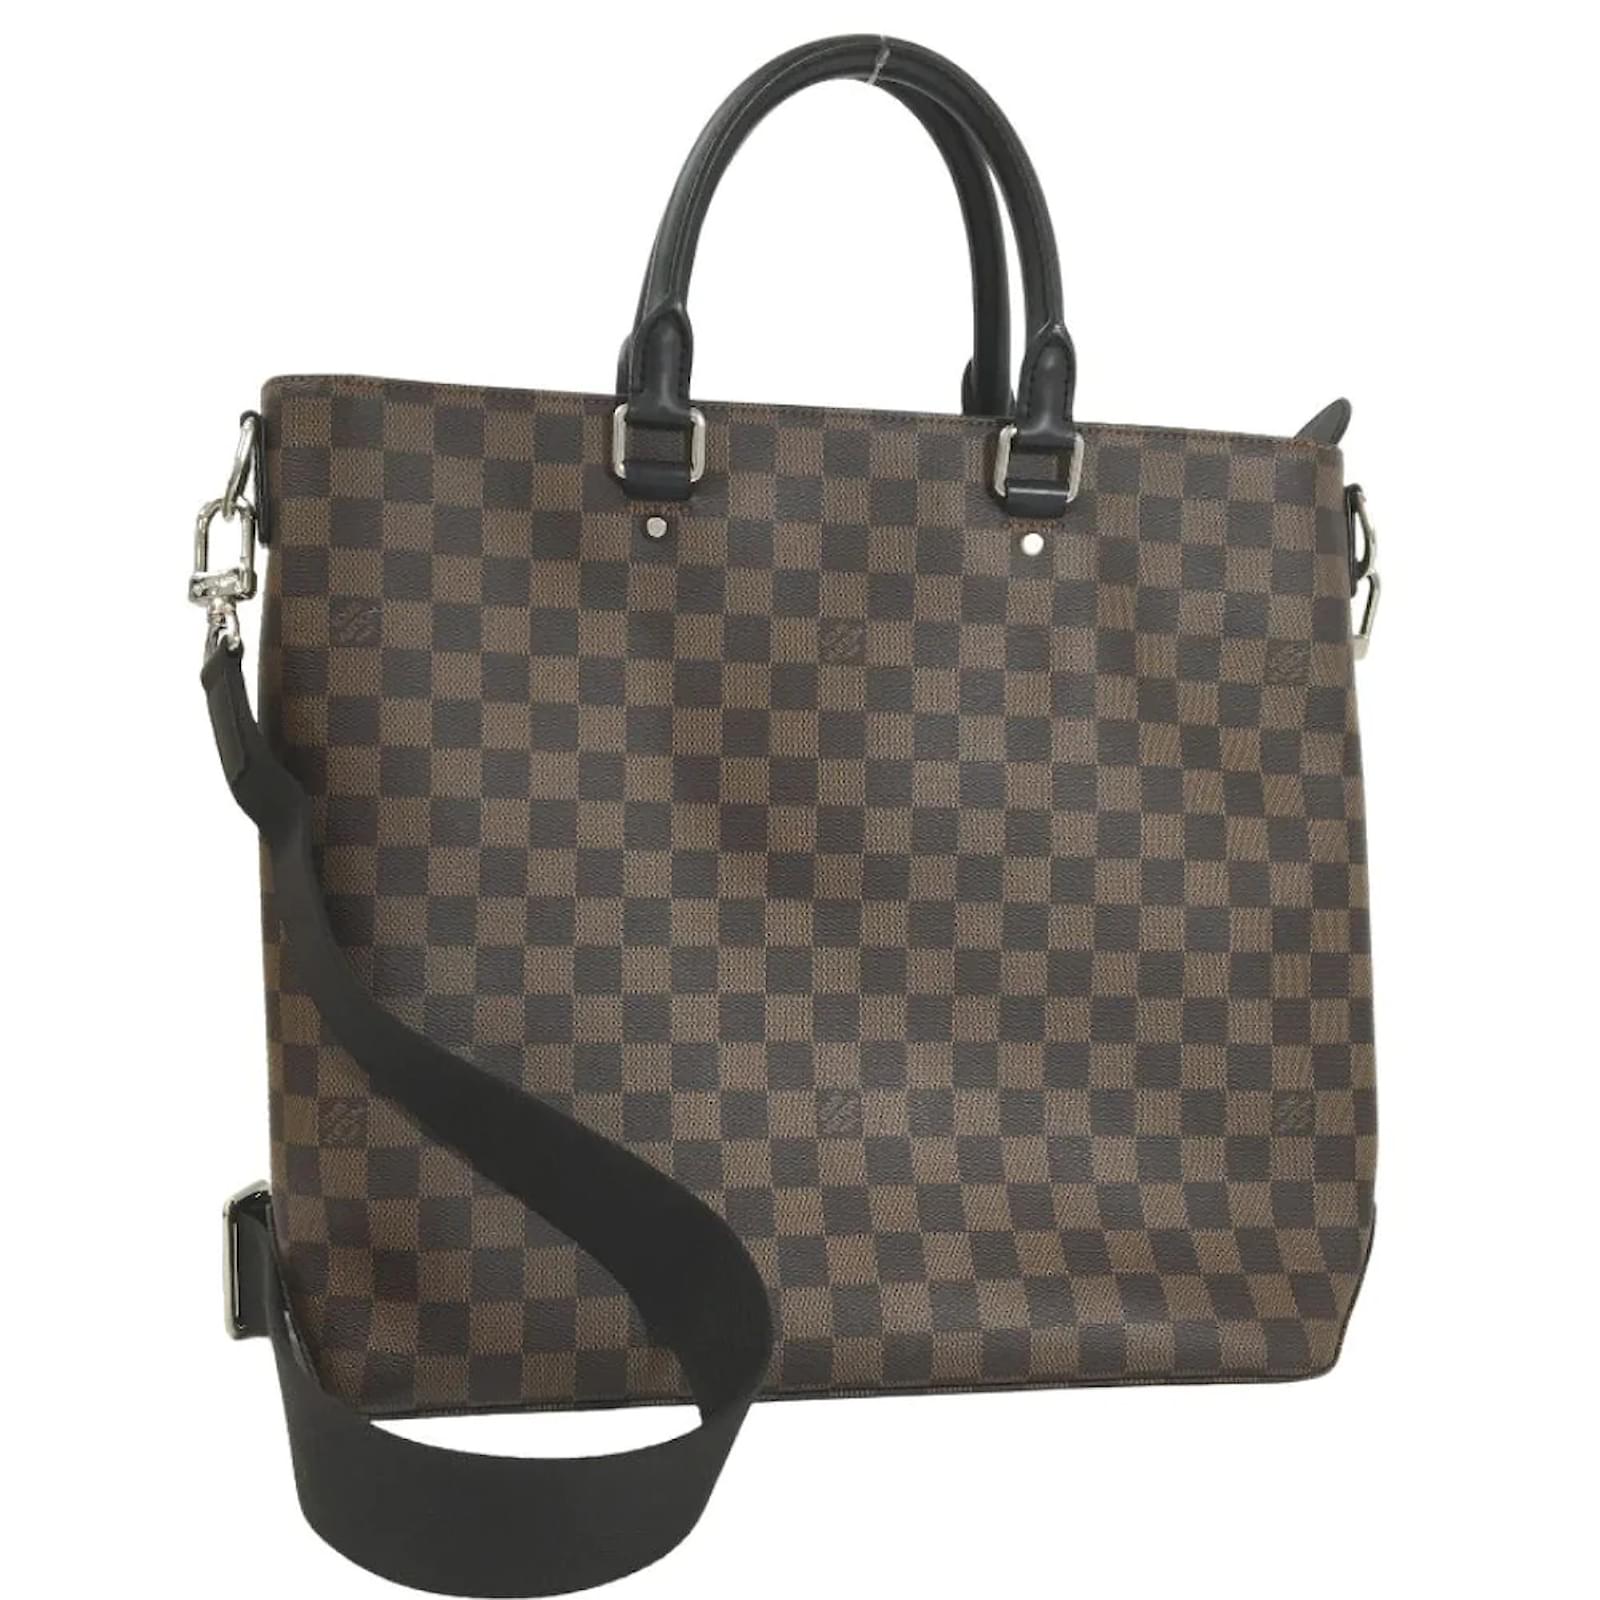 Louis Vuitton Damier Ebene Griet - Brown Totes, Handbags